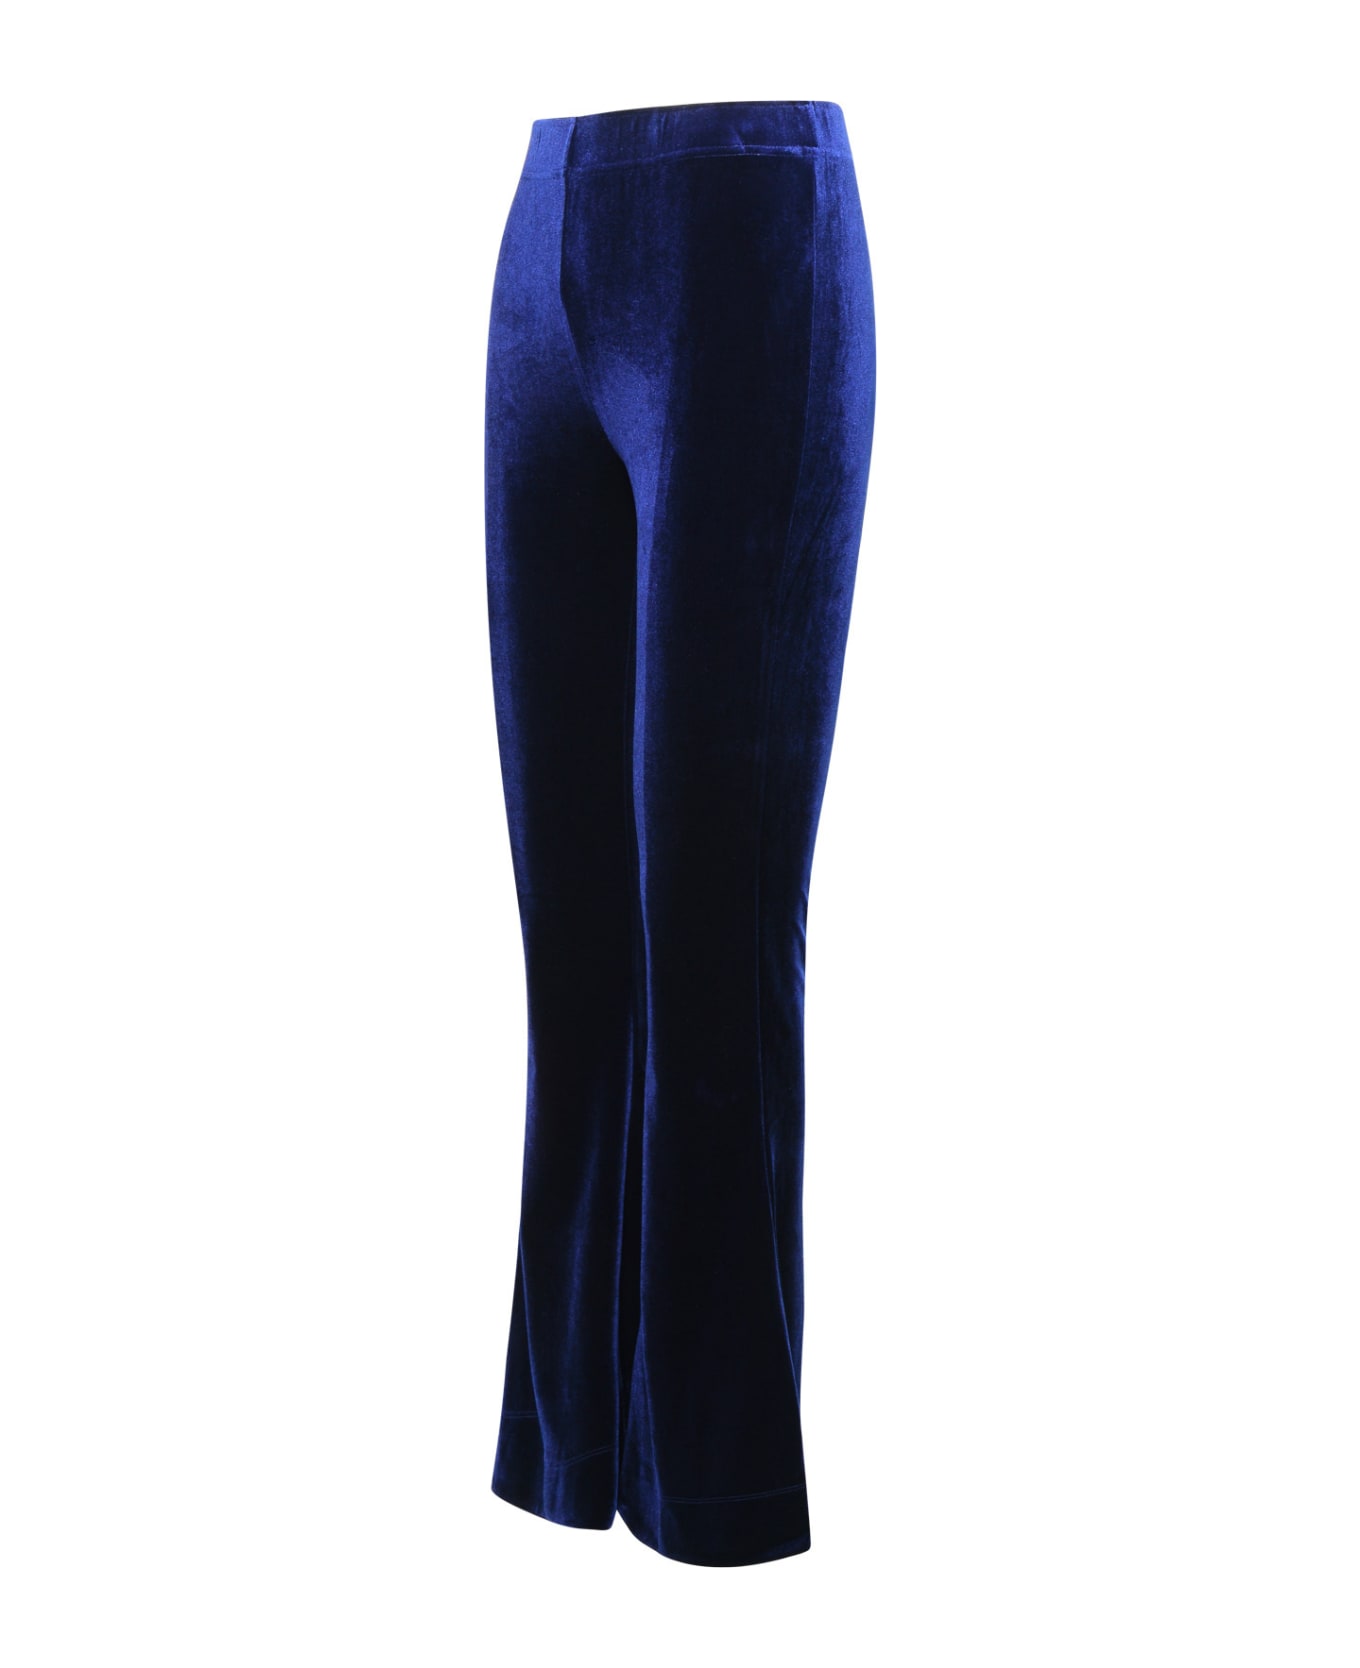 Ganni 'flared' Blue Velvet Jersey Pants - Total Eclipse